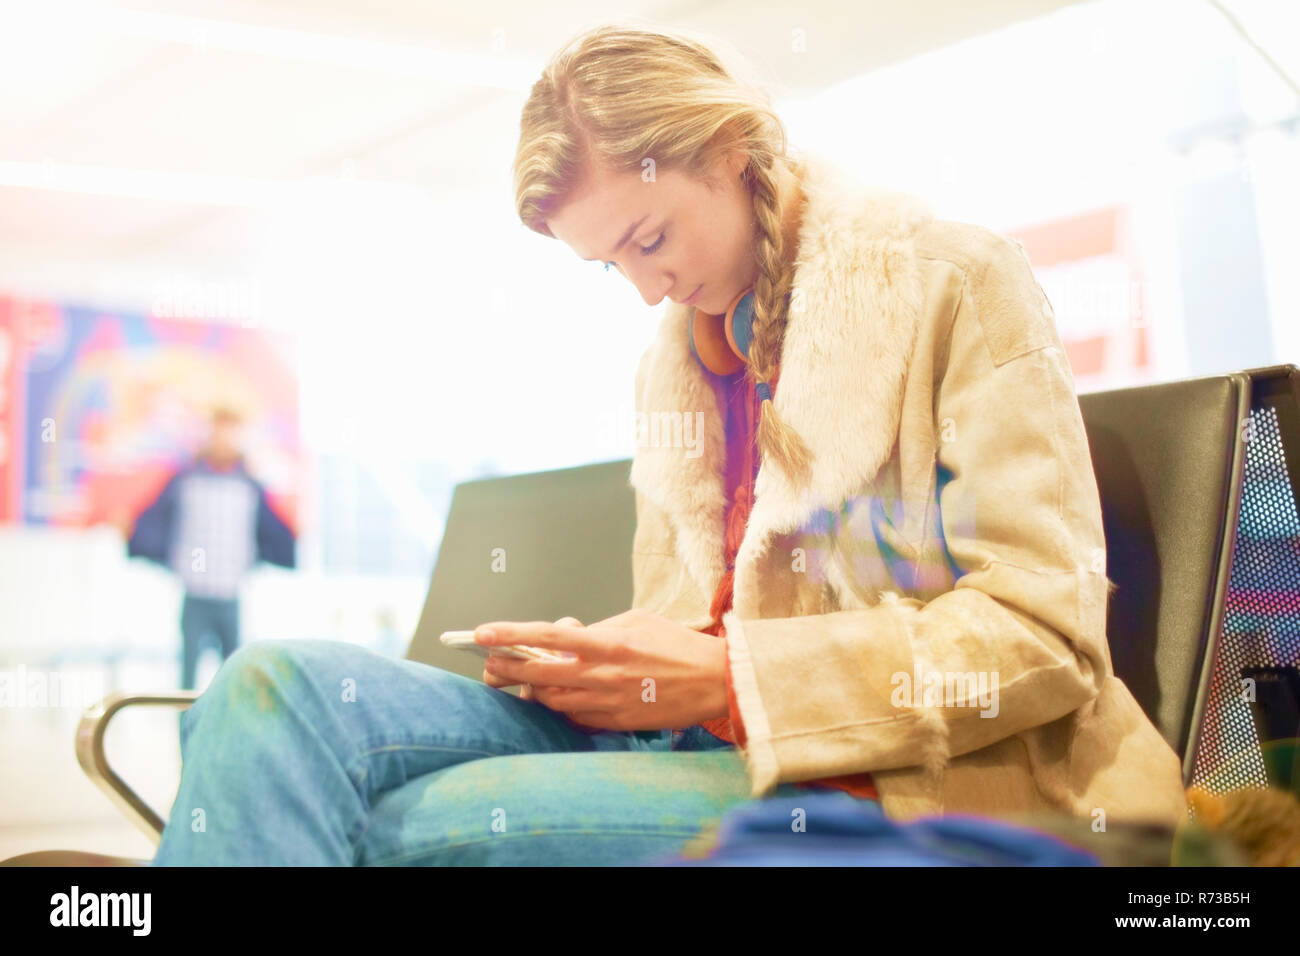 Junge Frau am Flughafen, sitzend, mit Smartphone Stockfoto